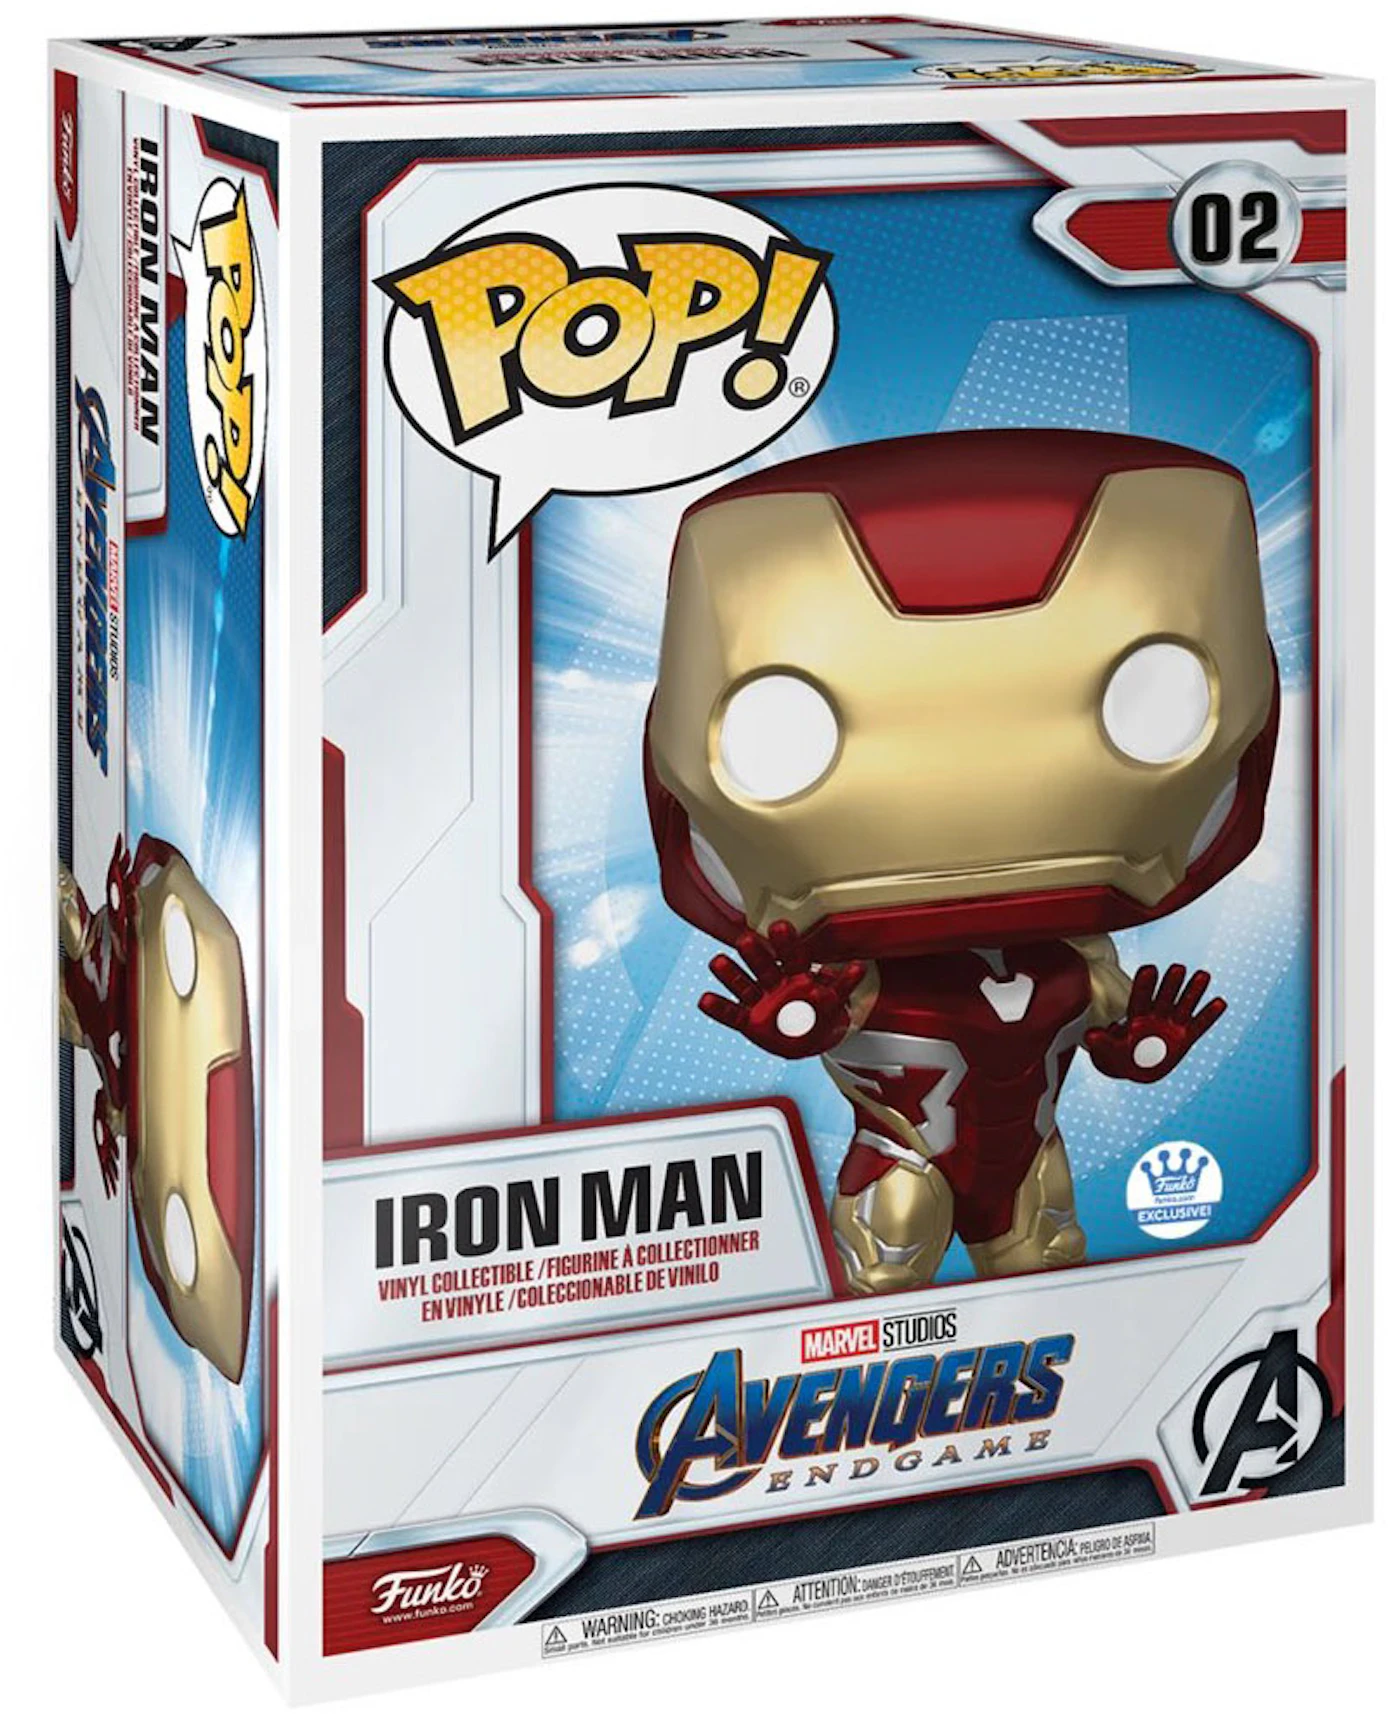 Elektropositief Discriminerend leraar Funko Pop! Marvel Avengers End Game Iron Man 18 Inch Funko Shop Exclusive  Figure #02 - FW21 - US